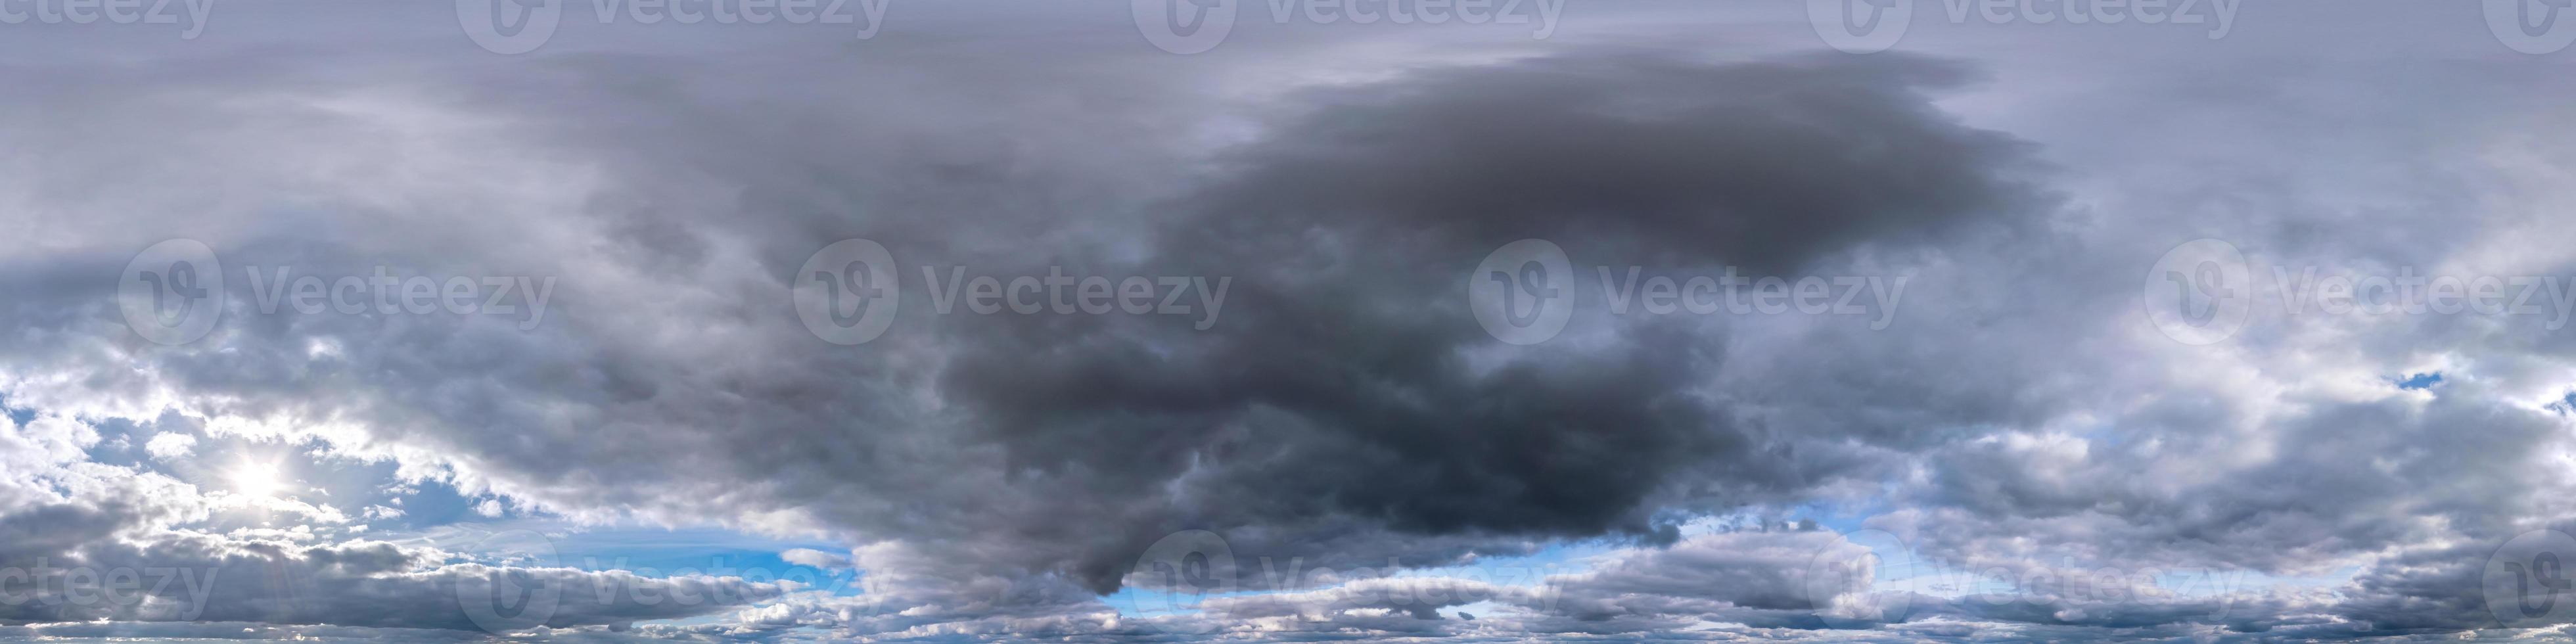 blå himmel med mörka vackra moln före storm i sömlös hdri-panorama 360 graders vinkelvy med zenit för användning i 3d-grafik eller spelutveckling som skydome eller redigera drönarbild foto